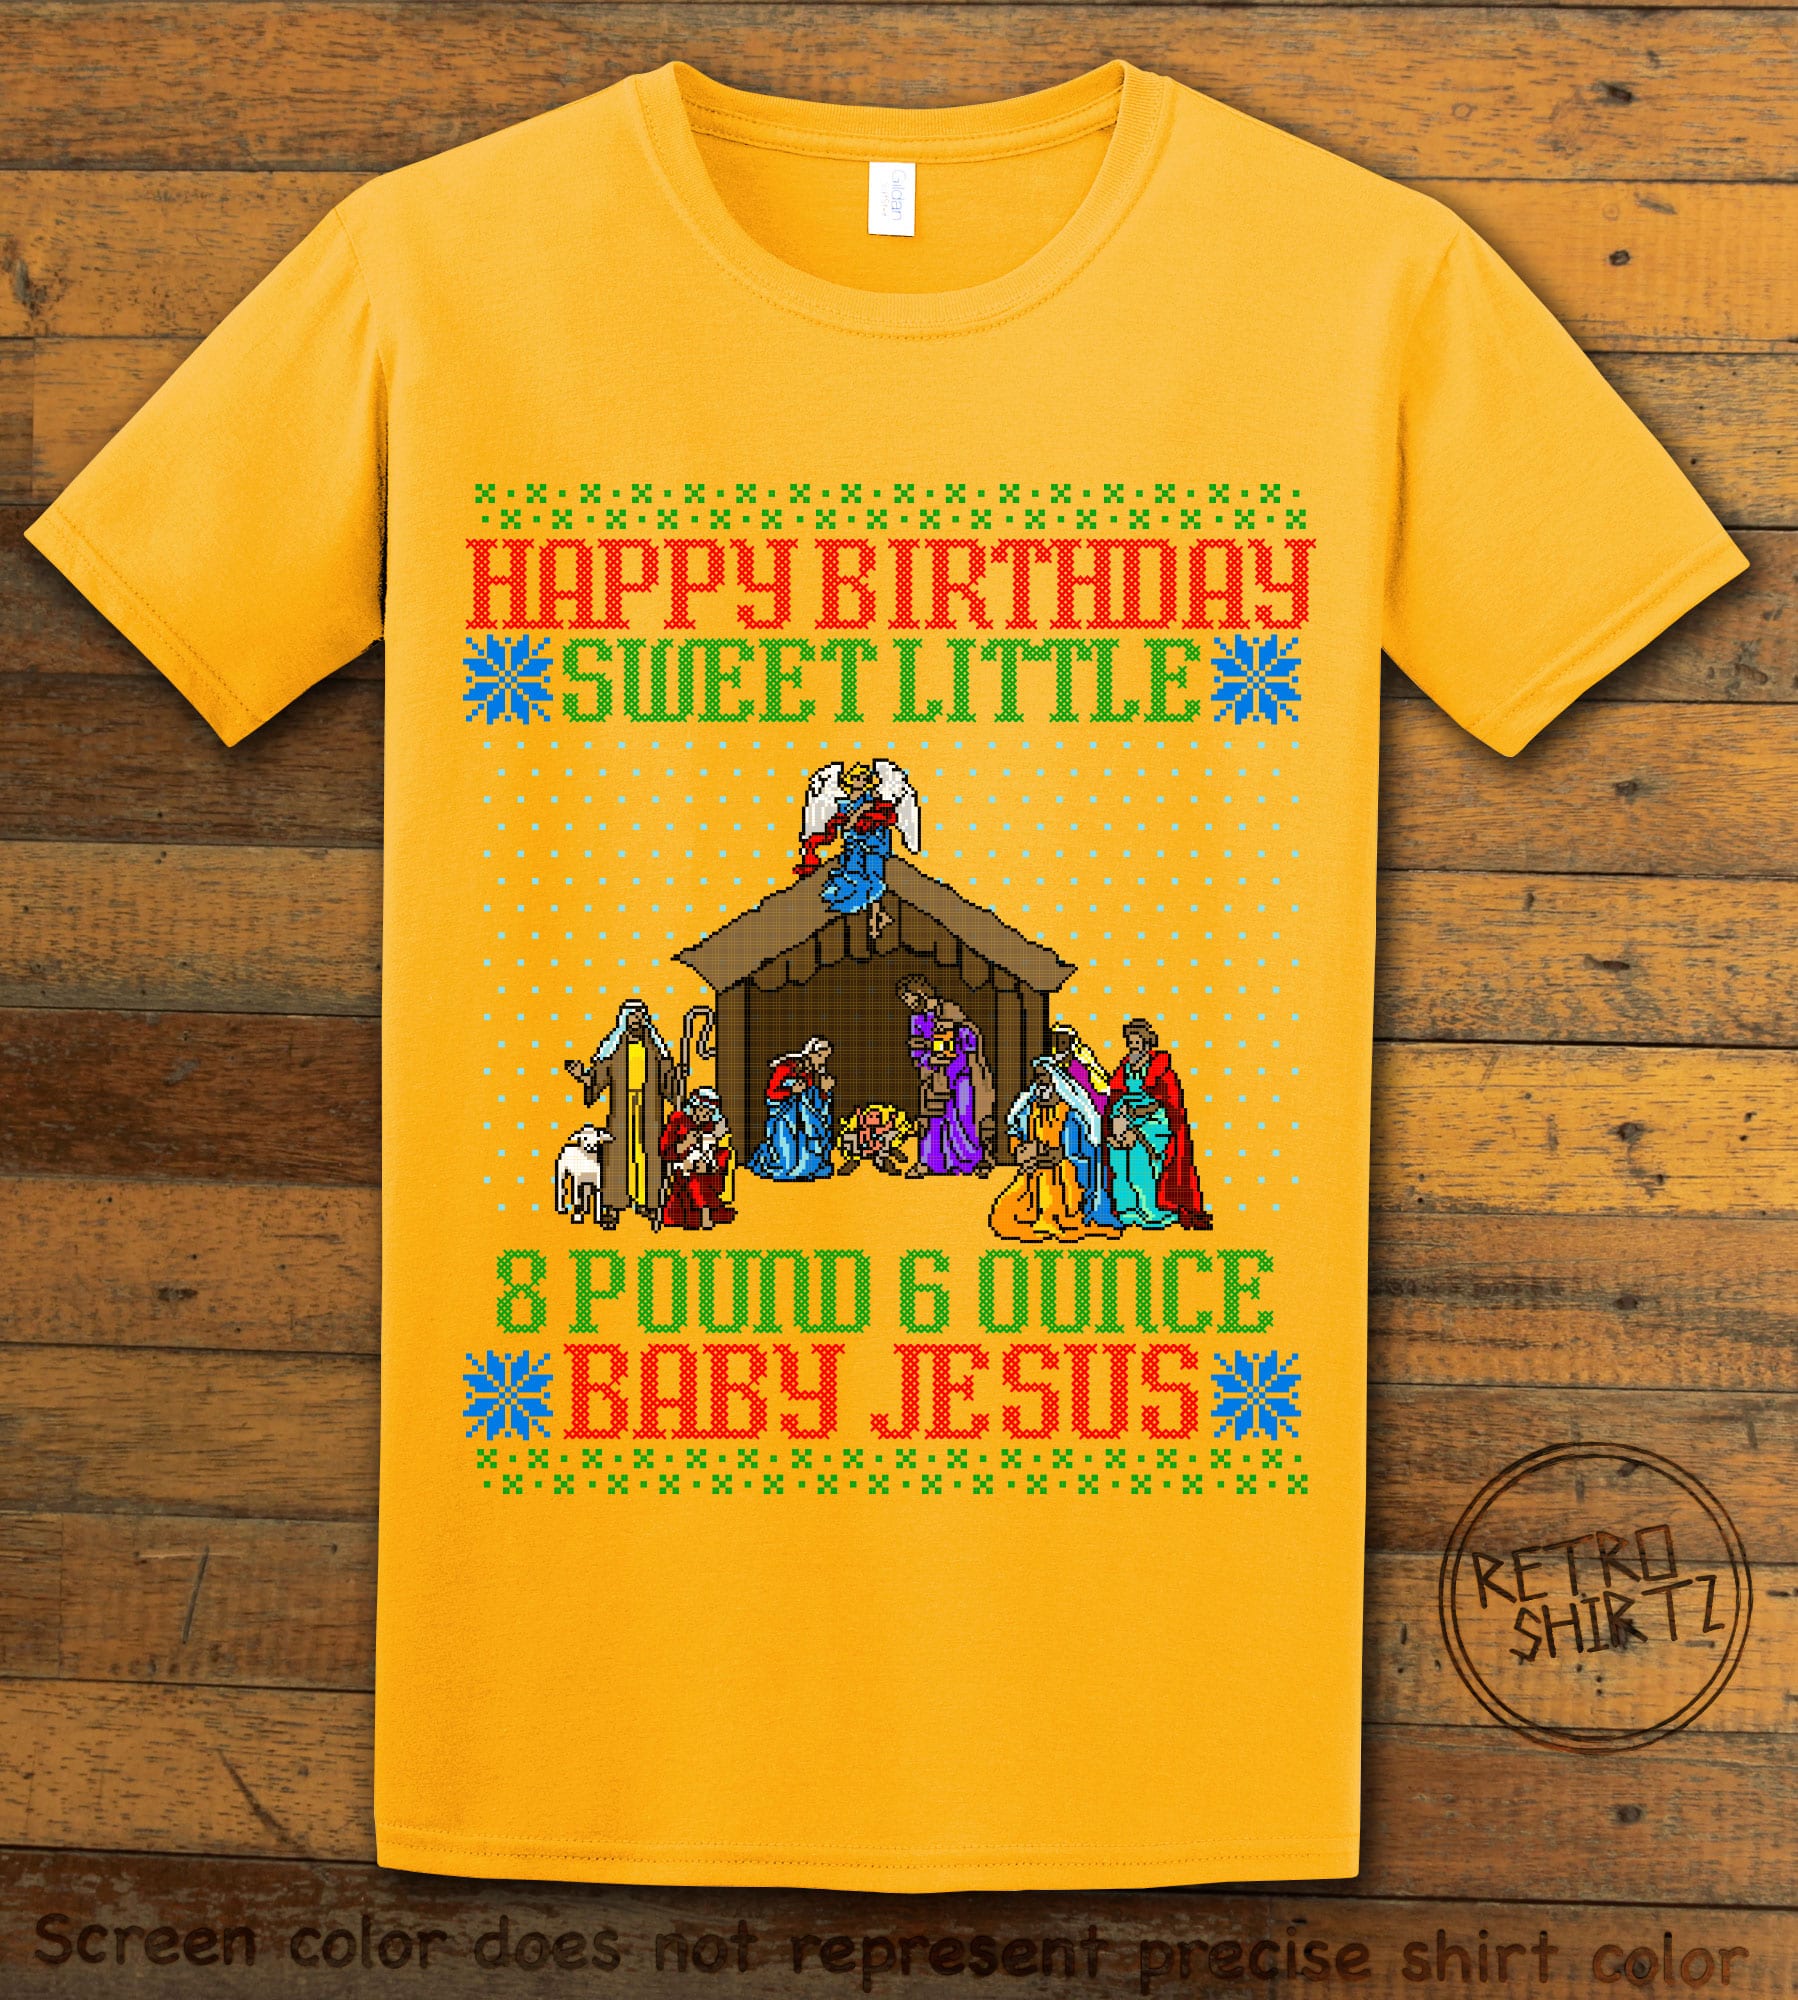 Happy Birthday Sweet Little Baby Jesus Christmas Graphic T-Shirt - yellow shirt design